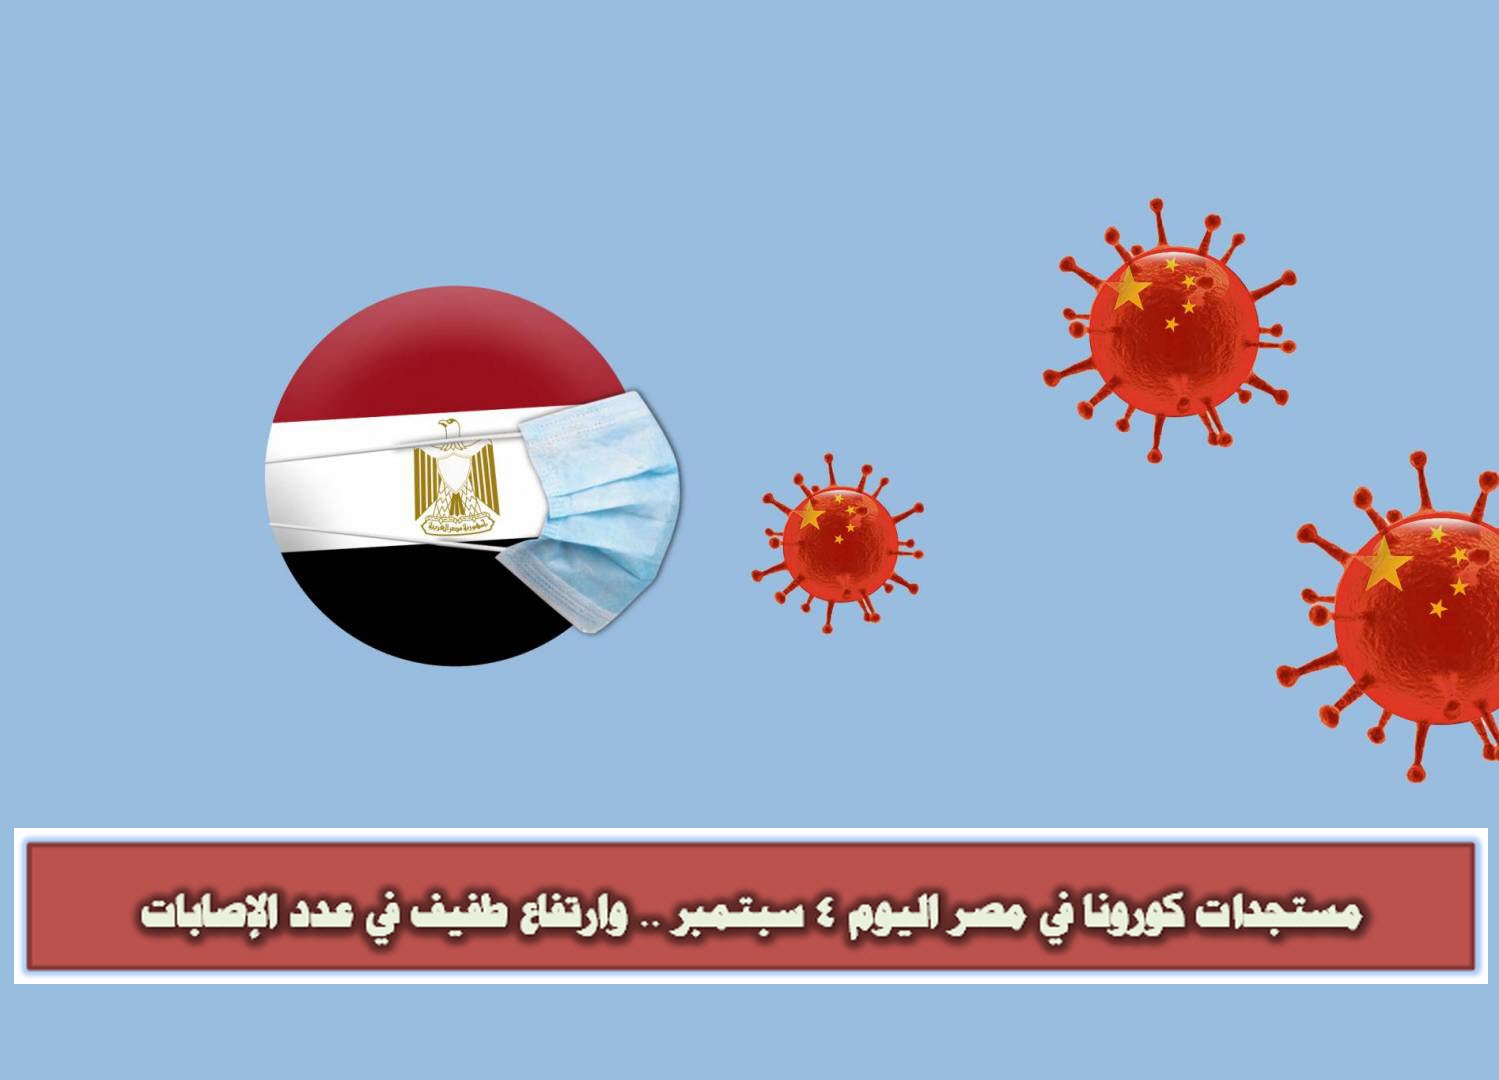 مستجدات كورونا في مصر اليوم 4 سبتمبر .. وارتفاع طفيف في عدد الإصابات